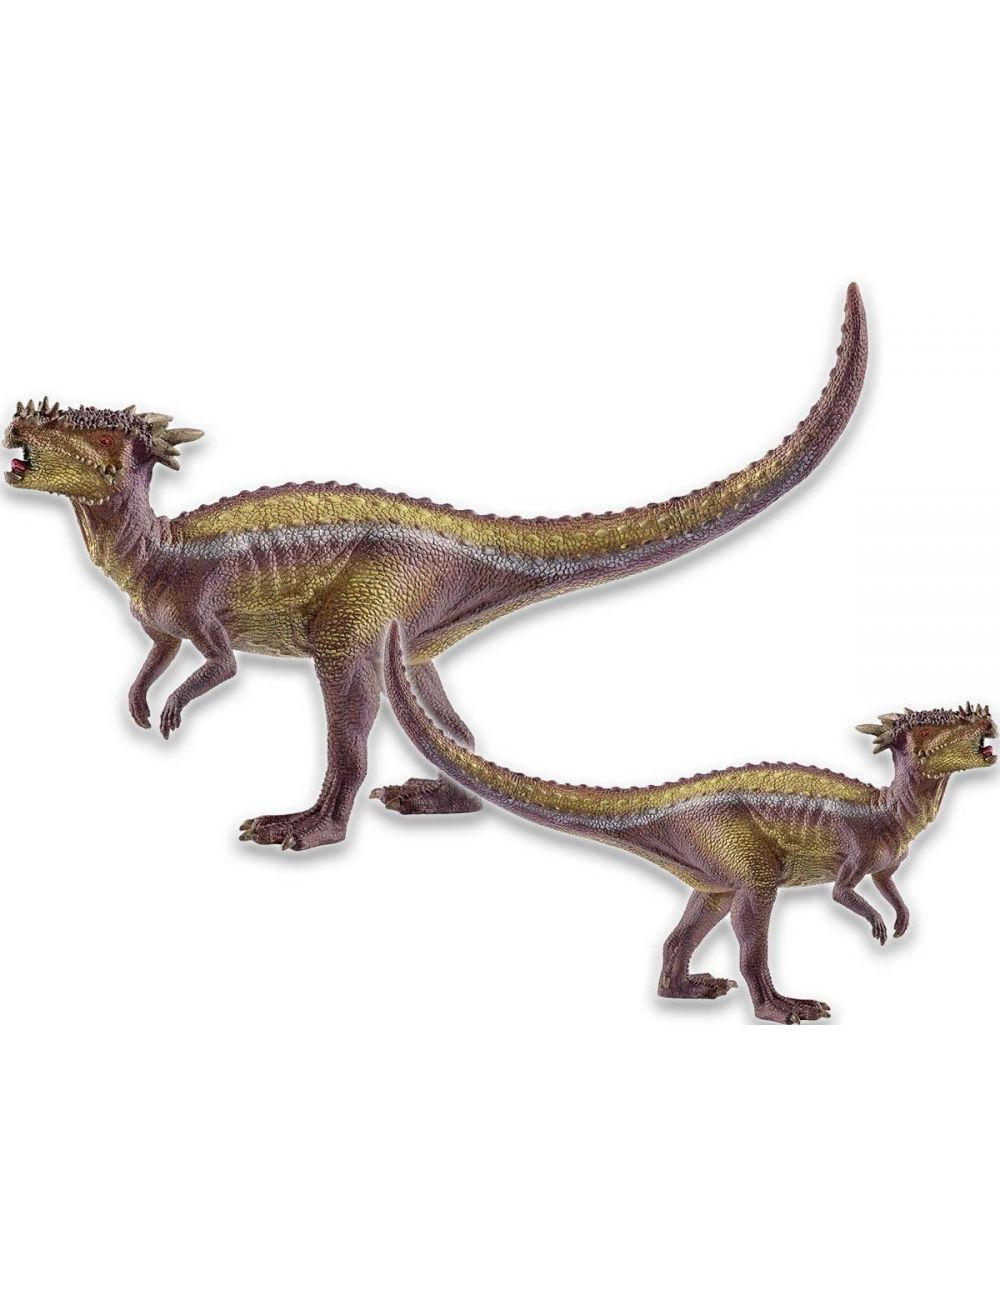 Schleich 15014 Dracorex Dinosaurs